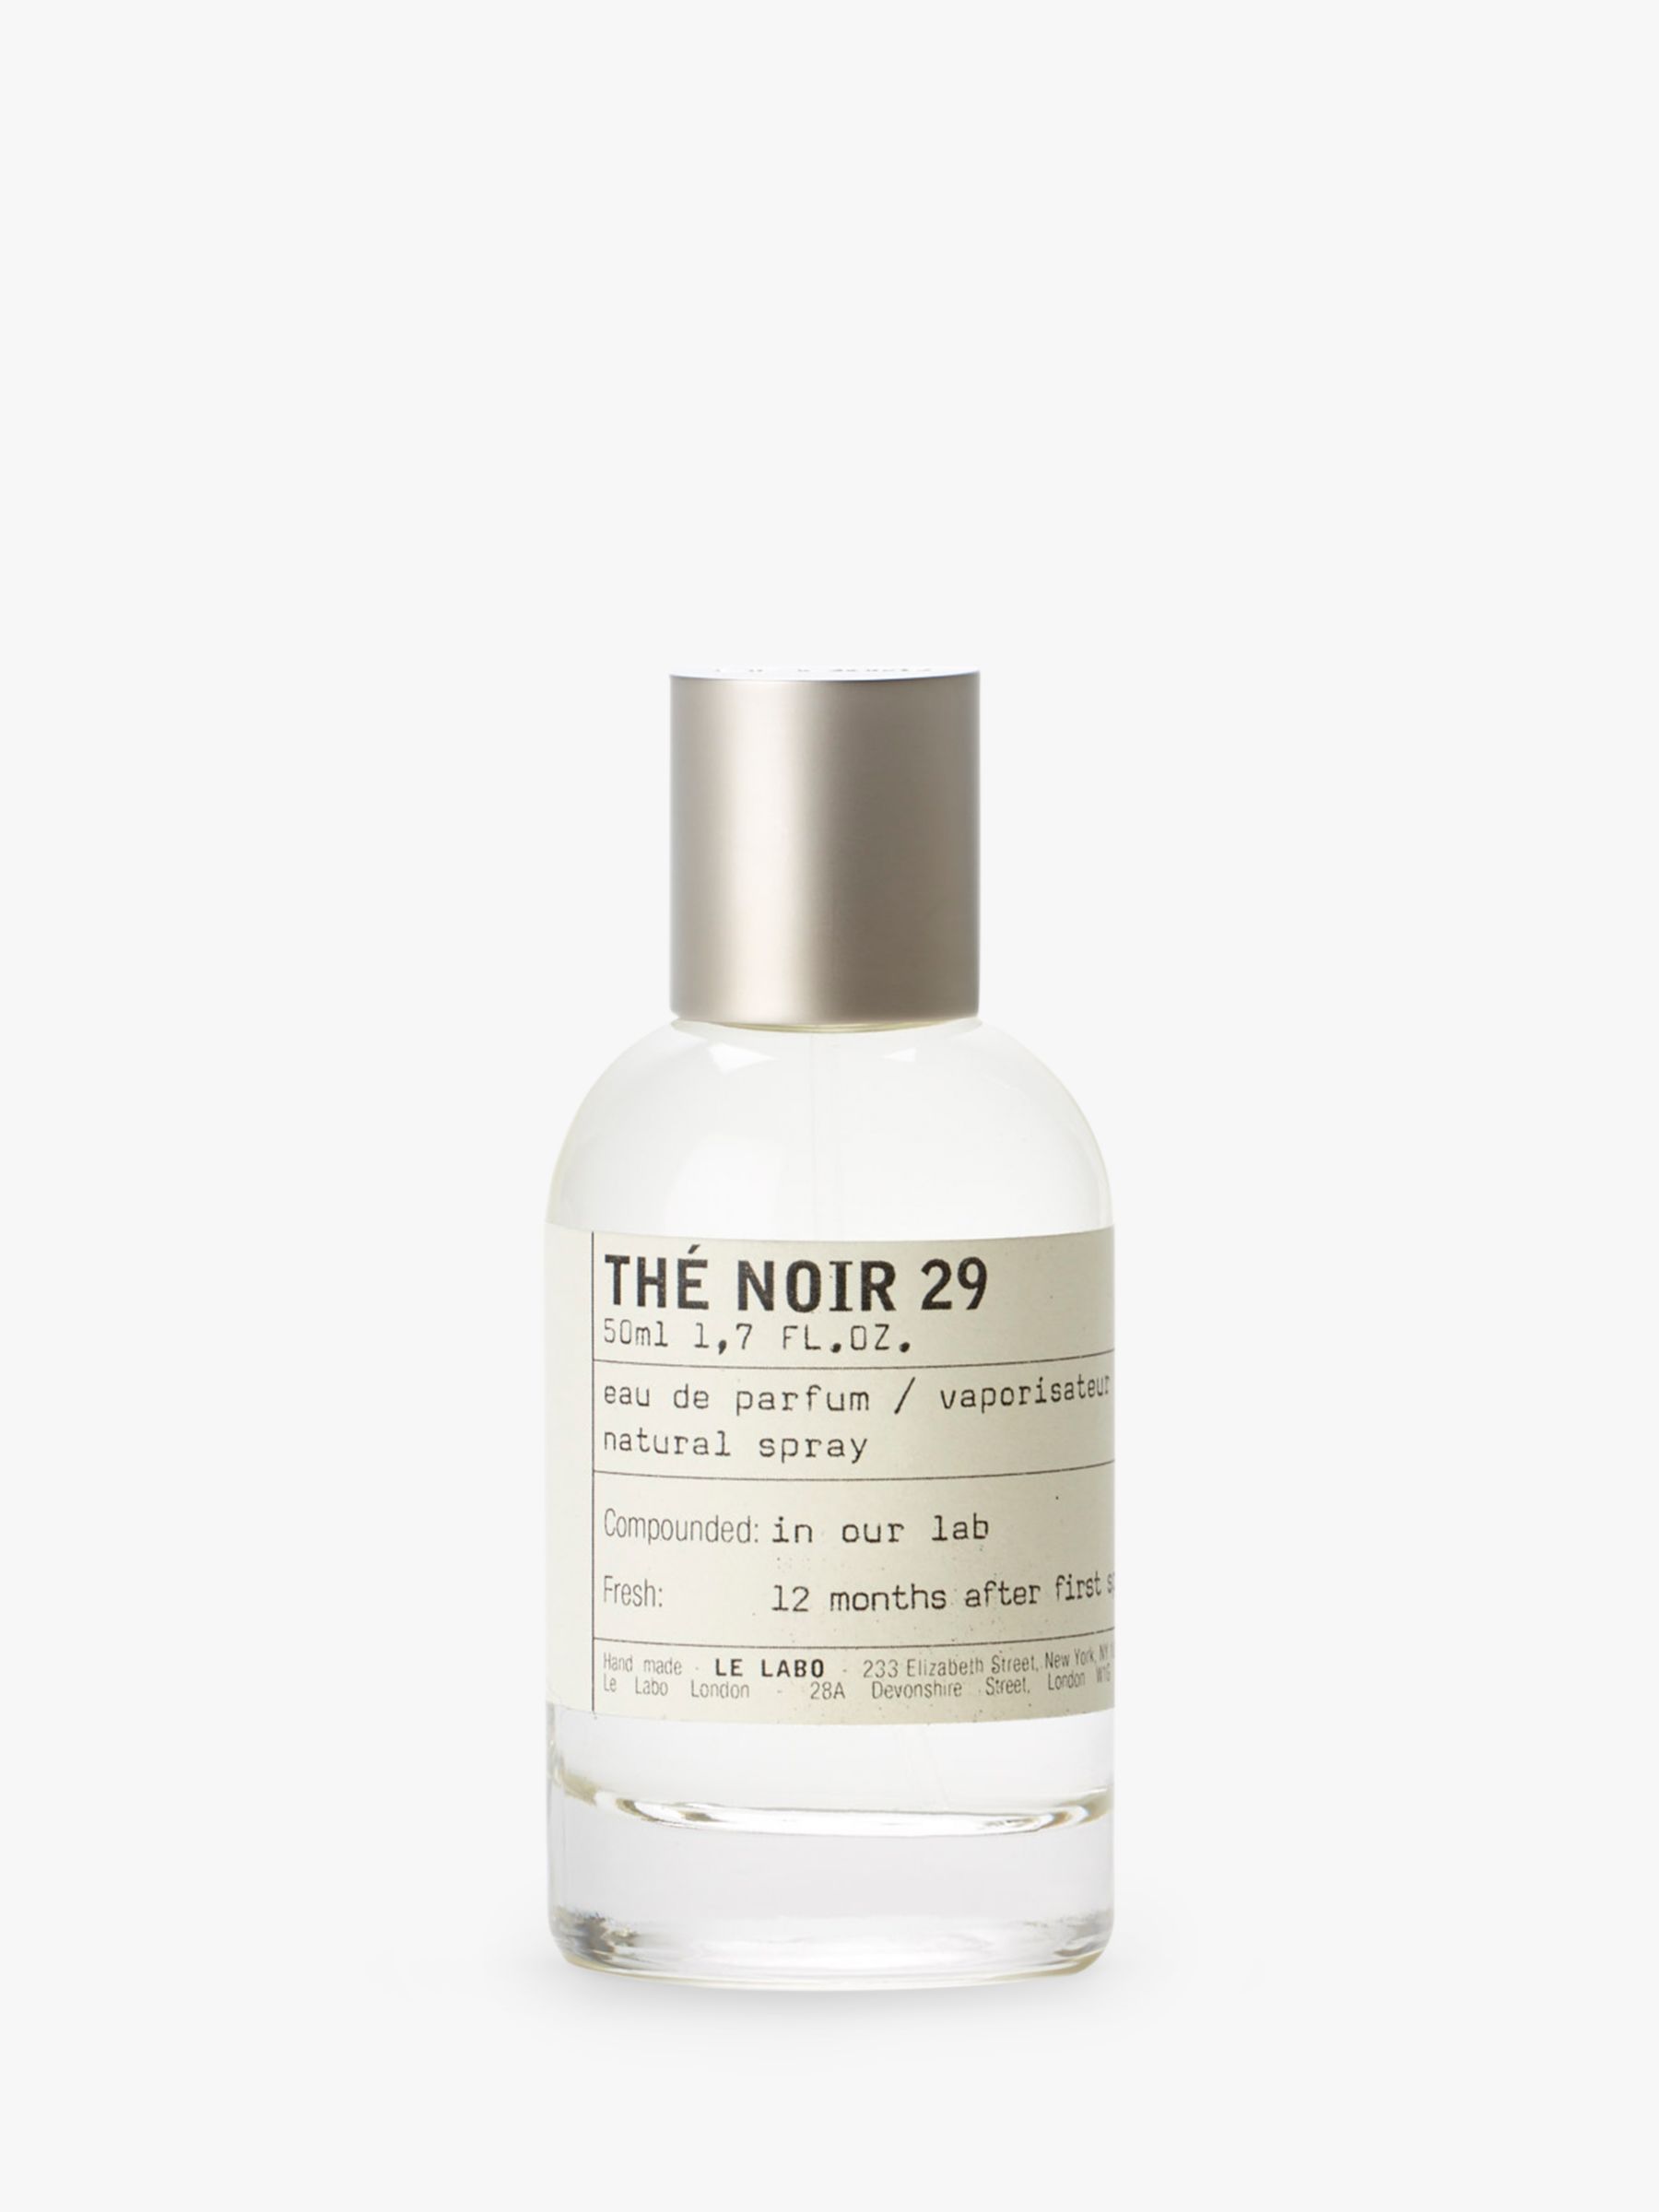 Le Labo Thé Noir 29 Eau de Parfum, 50ml at John Lewis & Partners